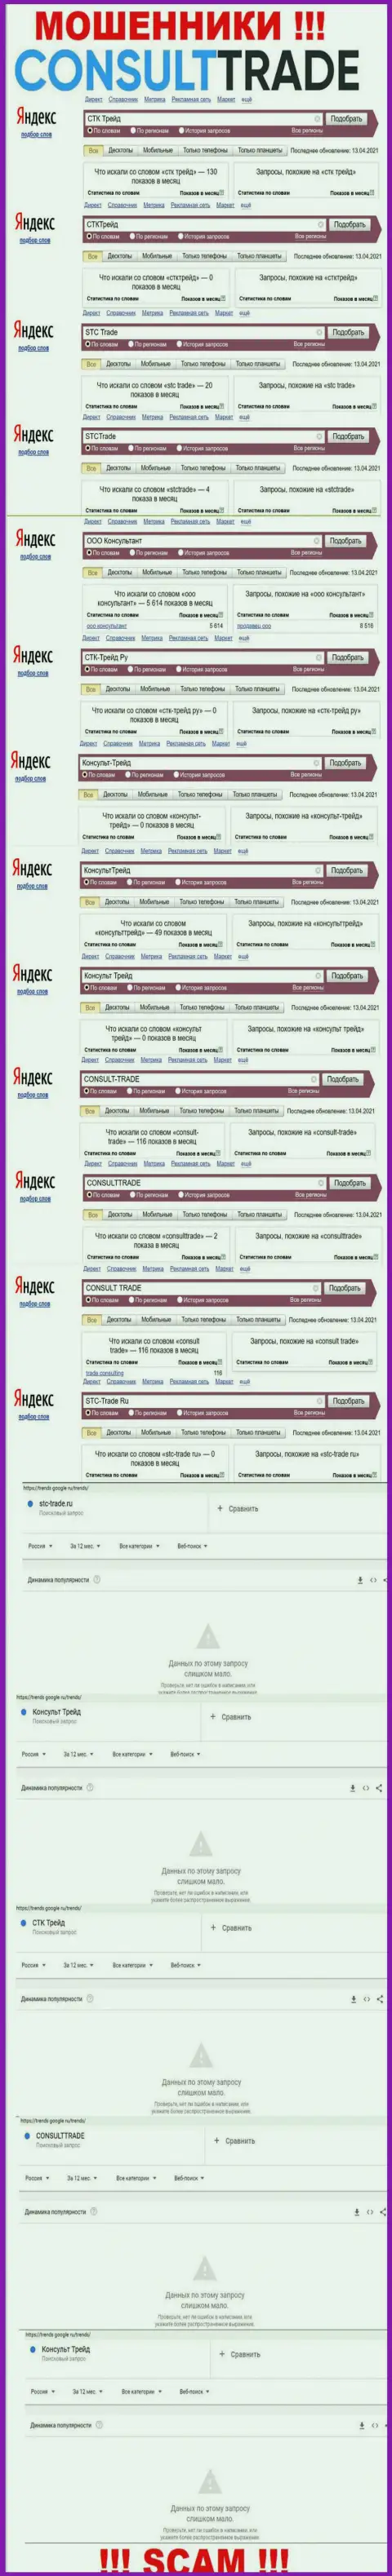 Скрин результата онлайн запросов по противозаконно действующей компании СТК Трейд